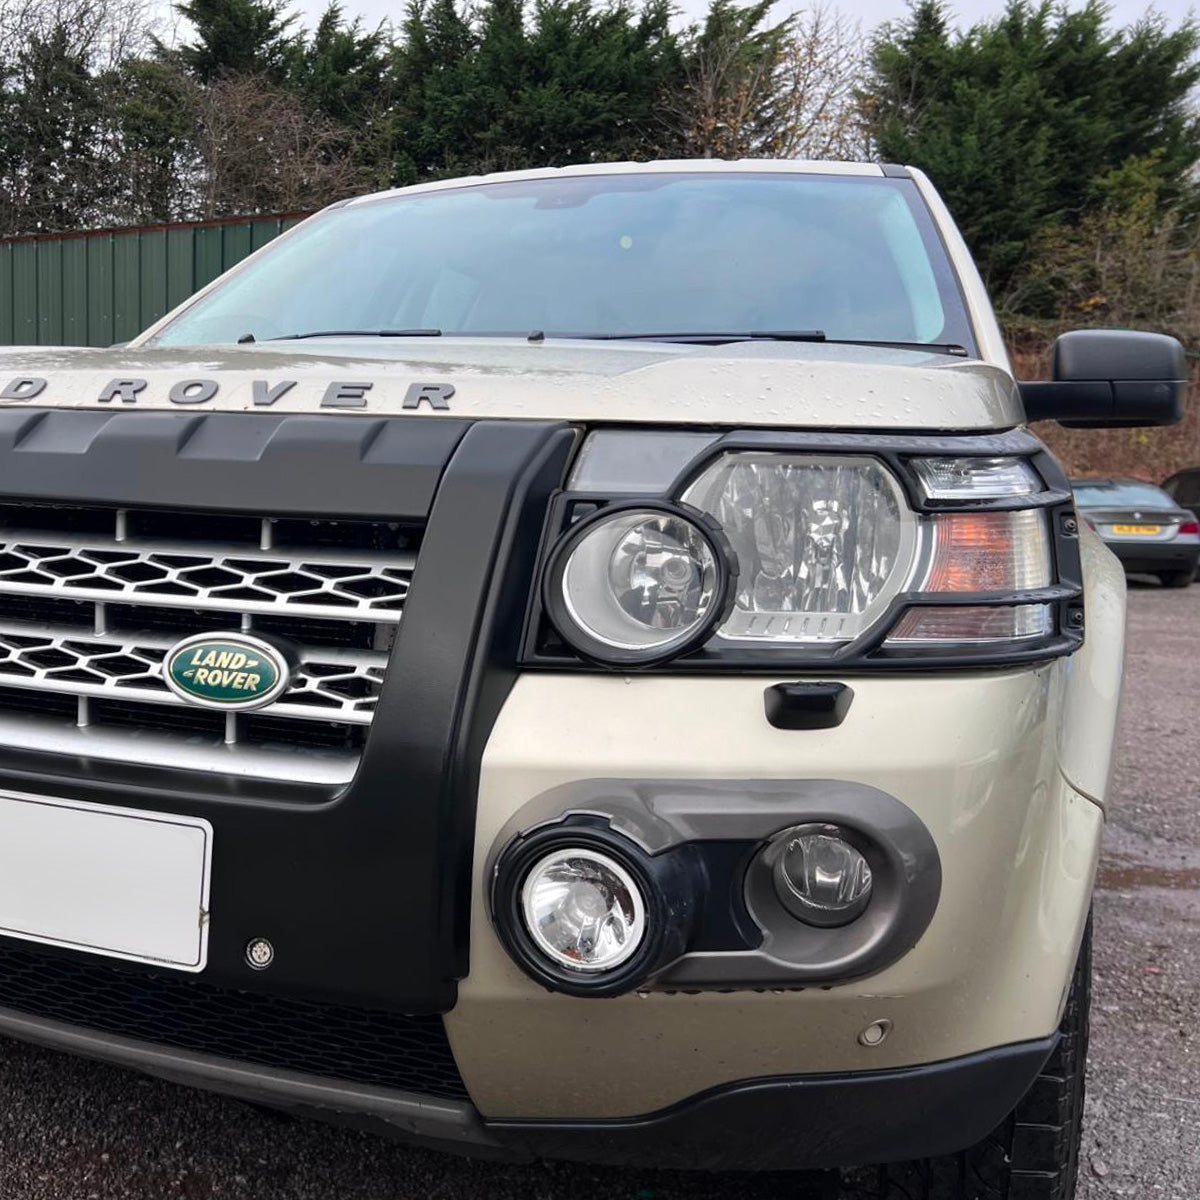 Genuine Driving Light Kit for Land Rover Freelander 2 2007-10